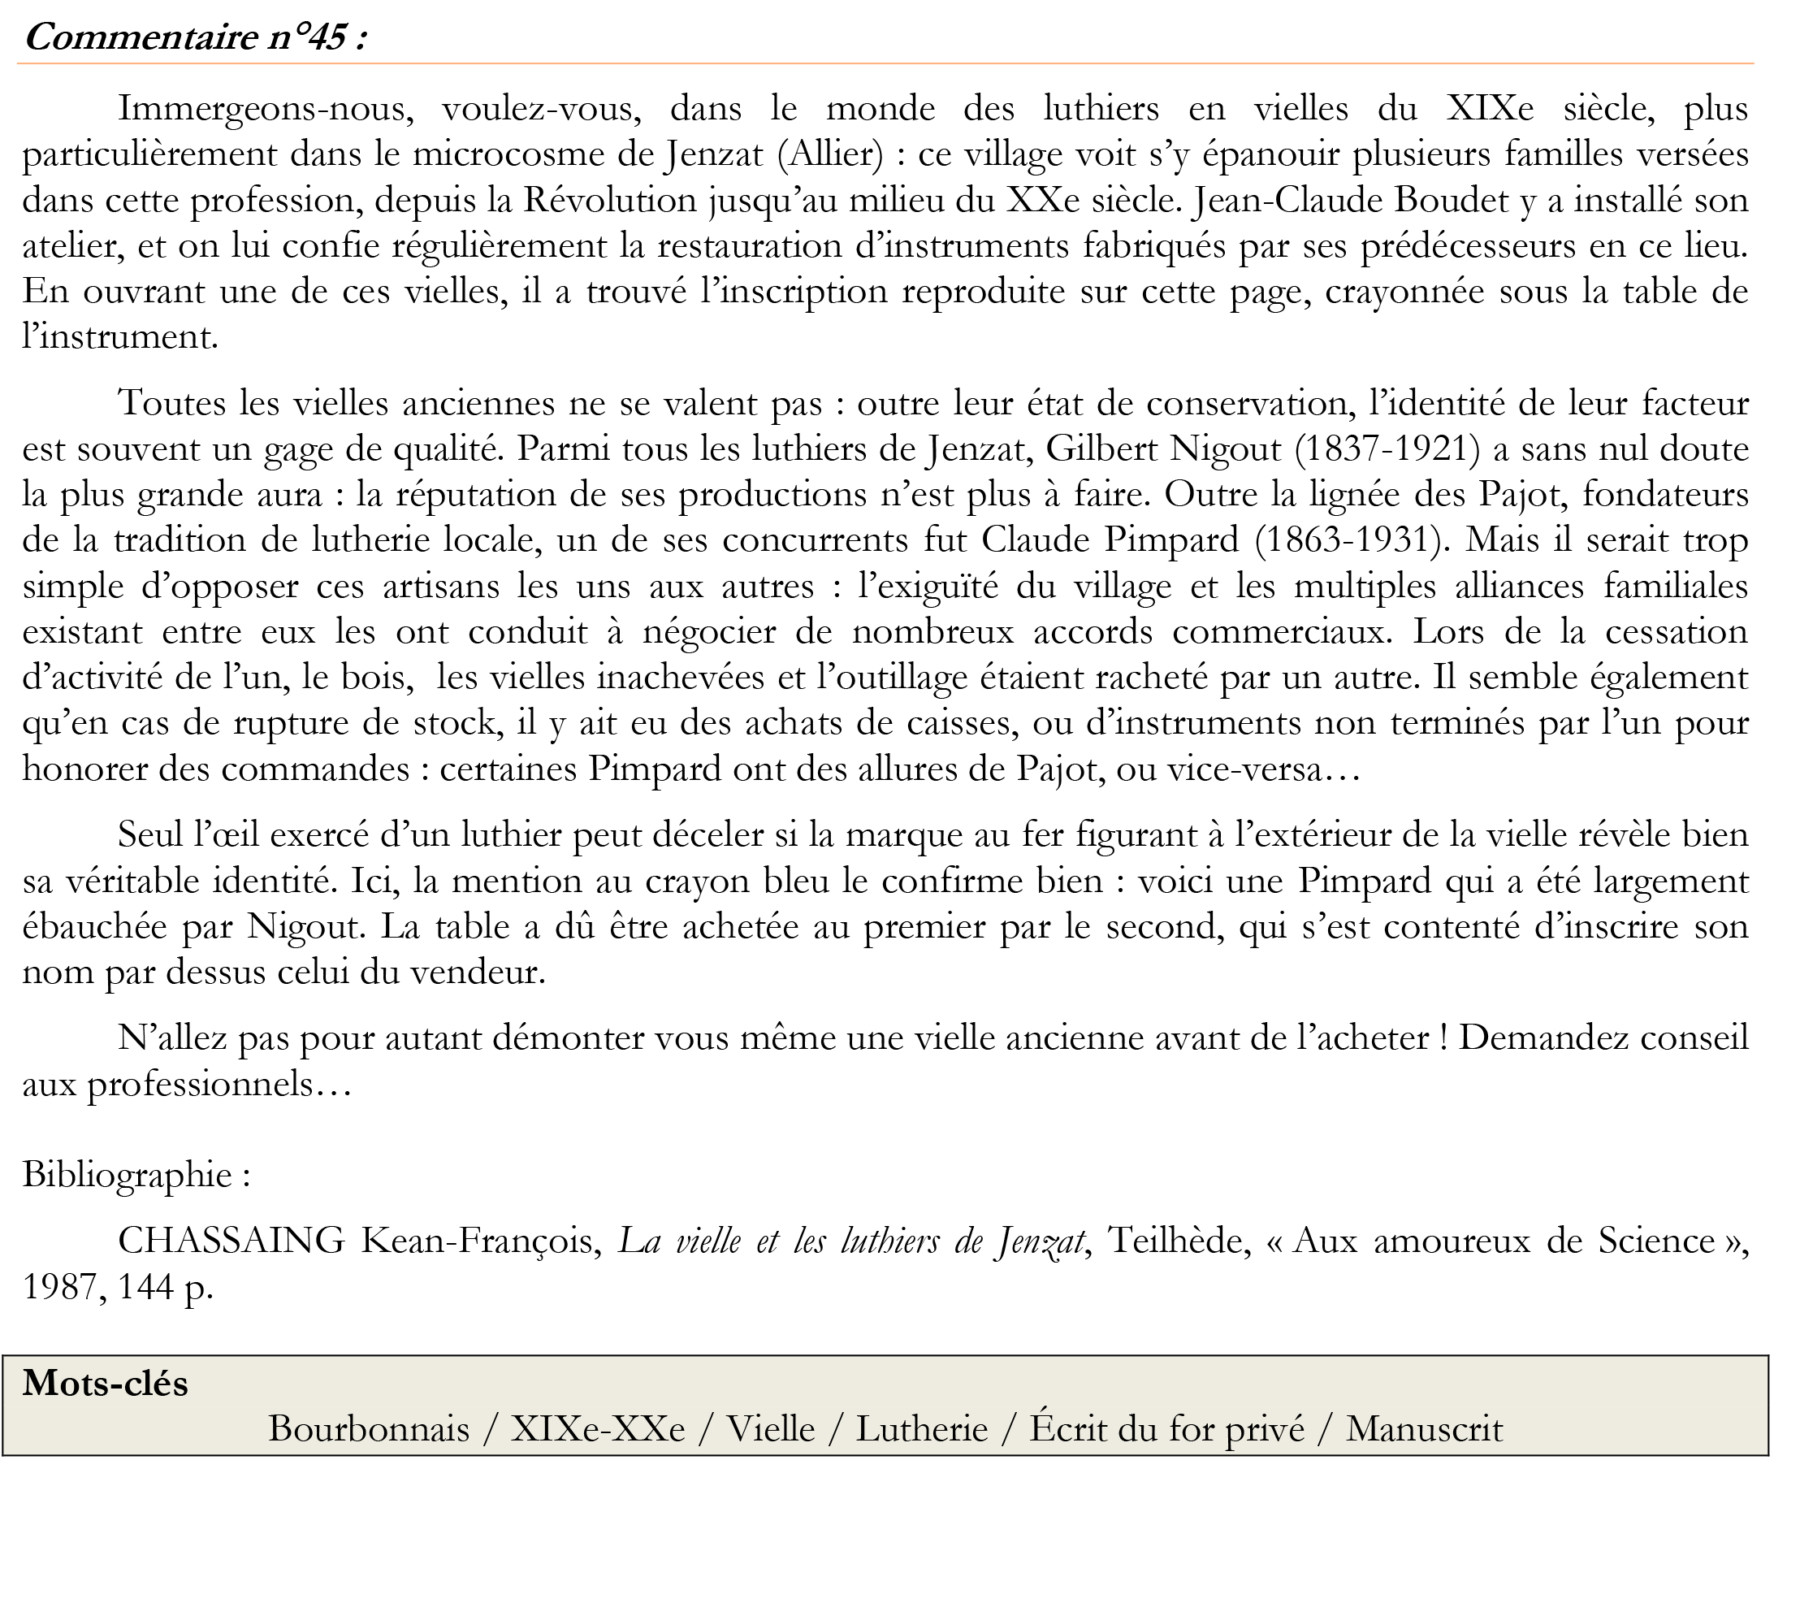 PDM45 – Nigout ou Pimpard ?, Bourbonnais, XIXe siècle